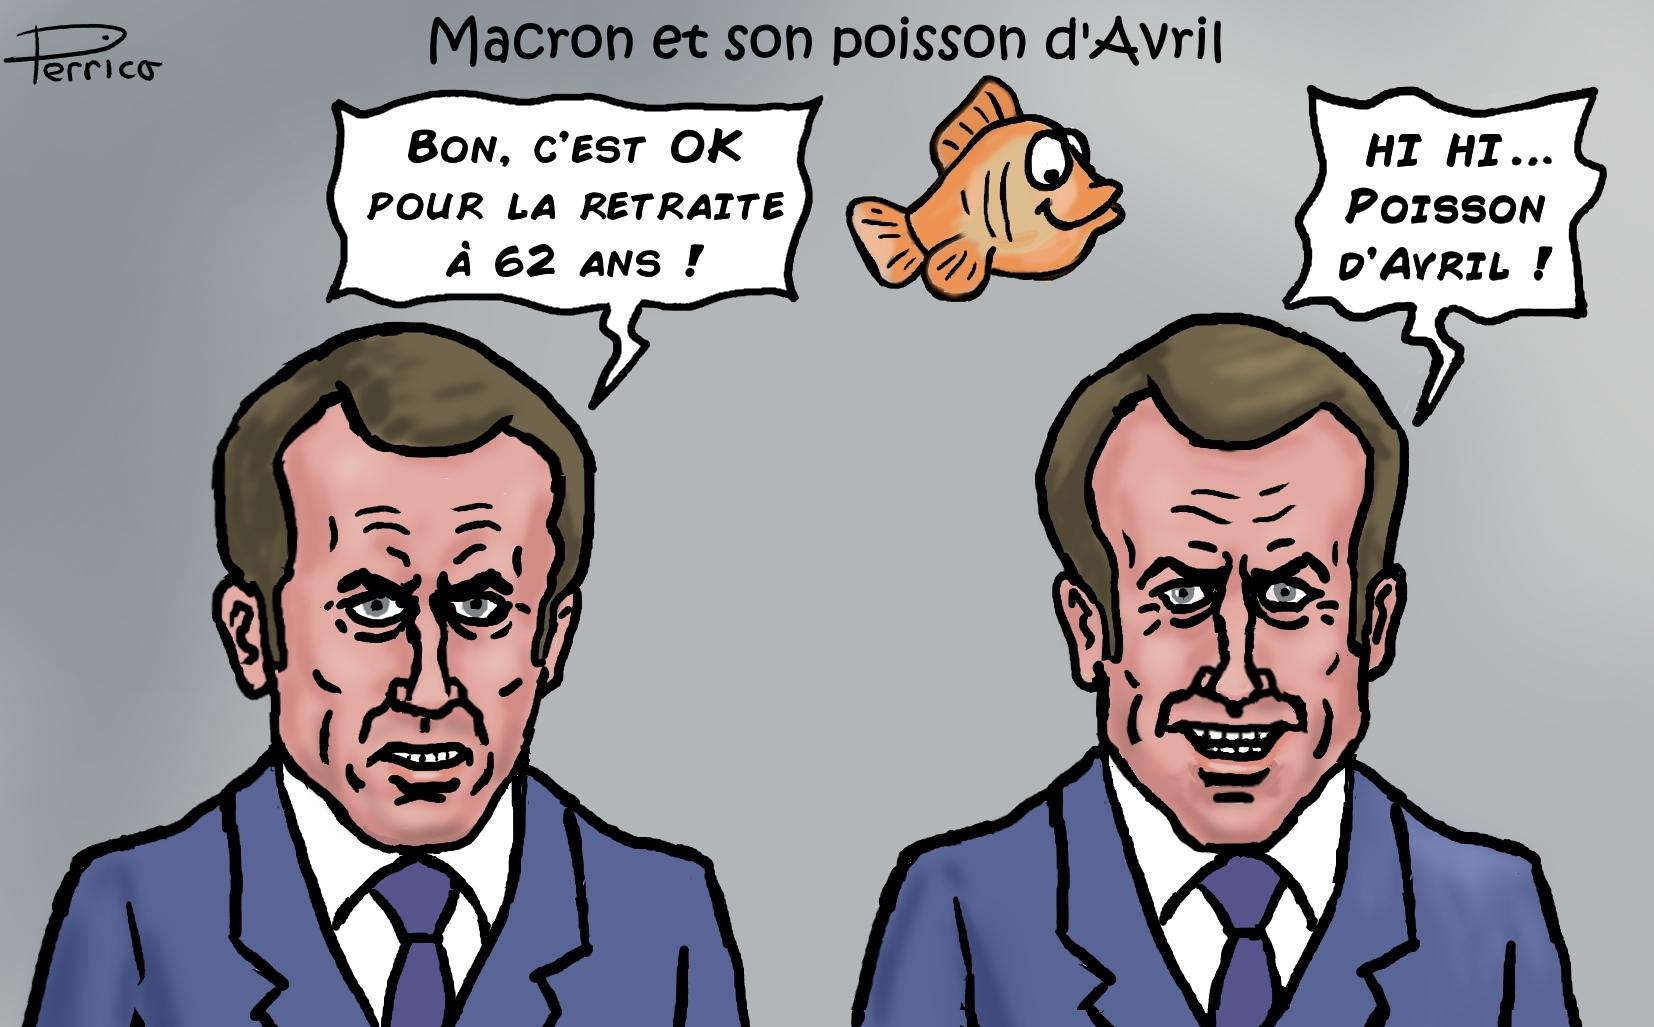 Macron et son poisson d'Avril